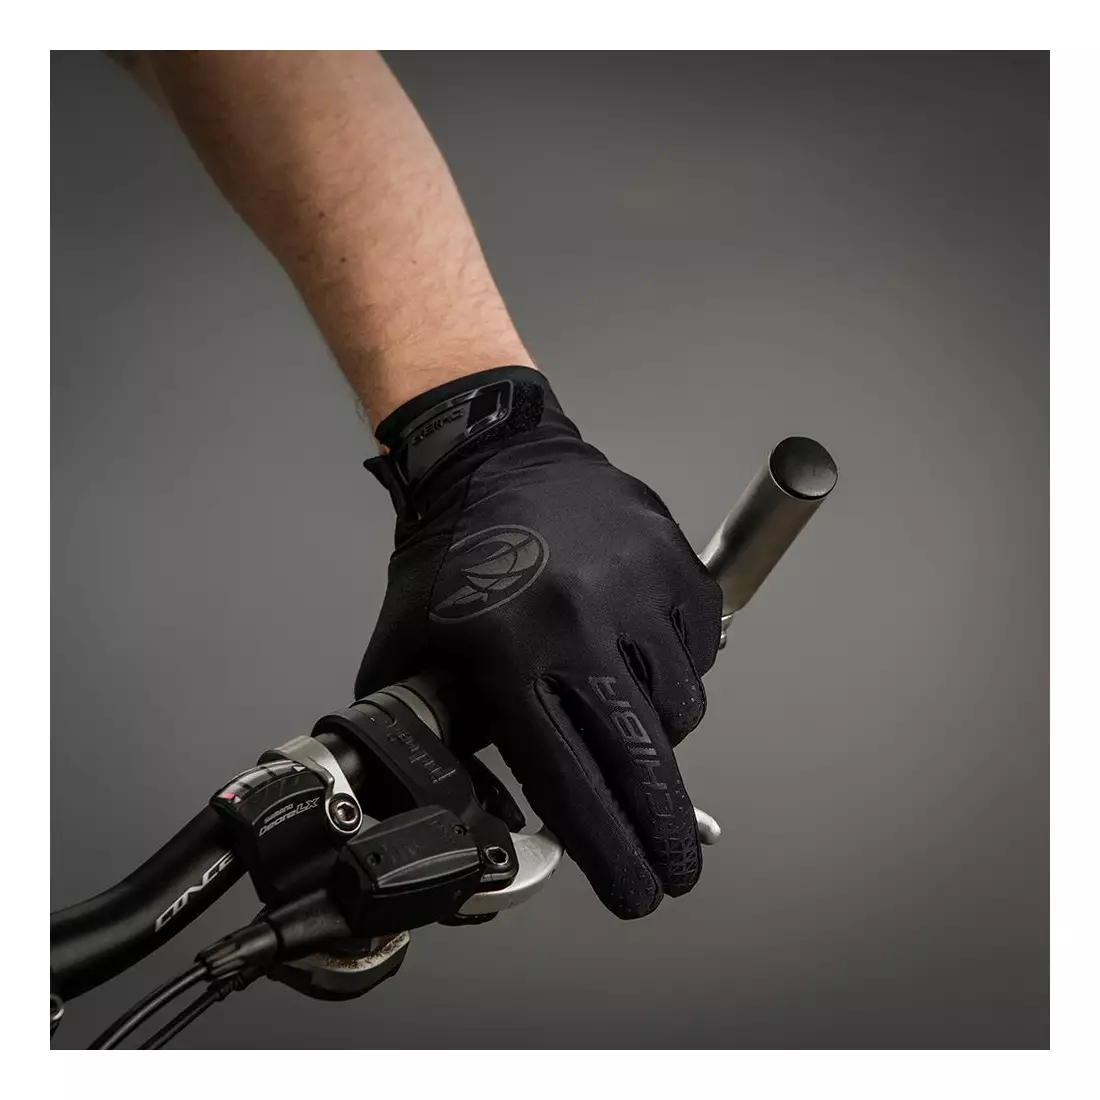 CHIBA BIOXCELL TOURING dlouhé rukavice na kolo, černé 3060720